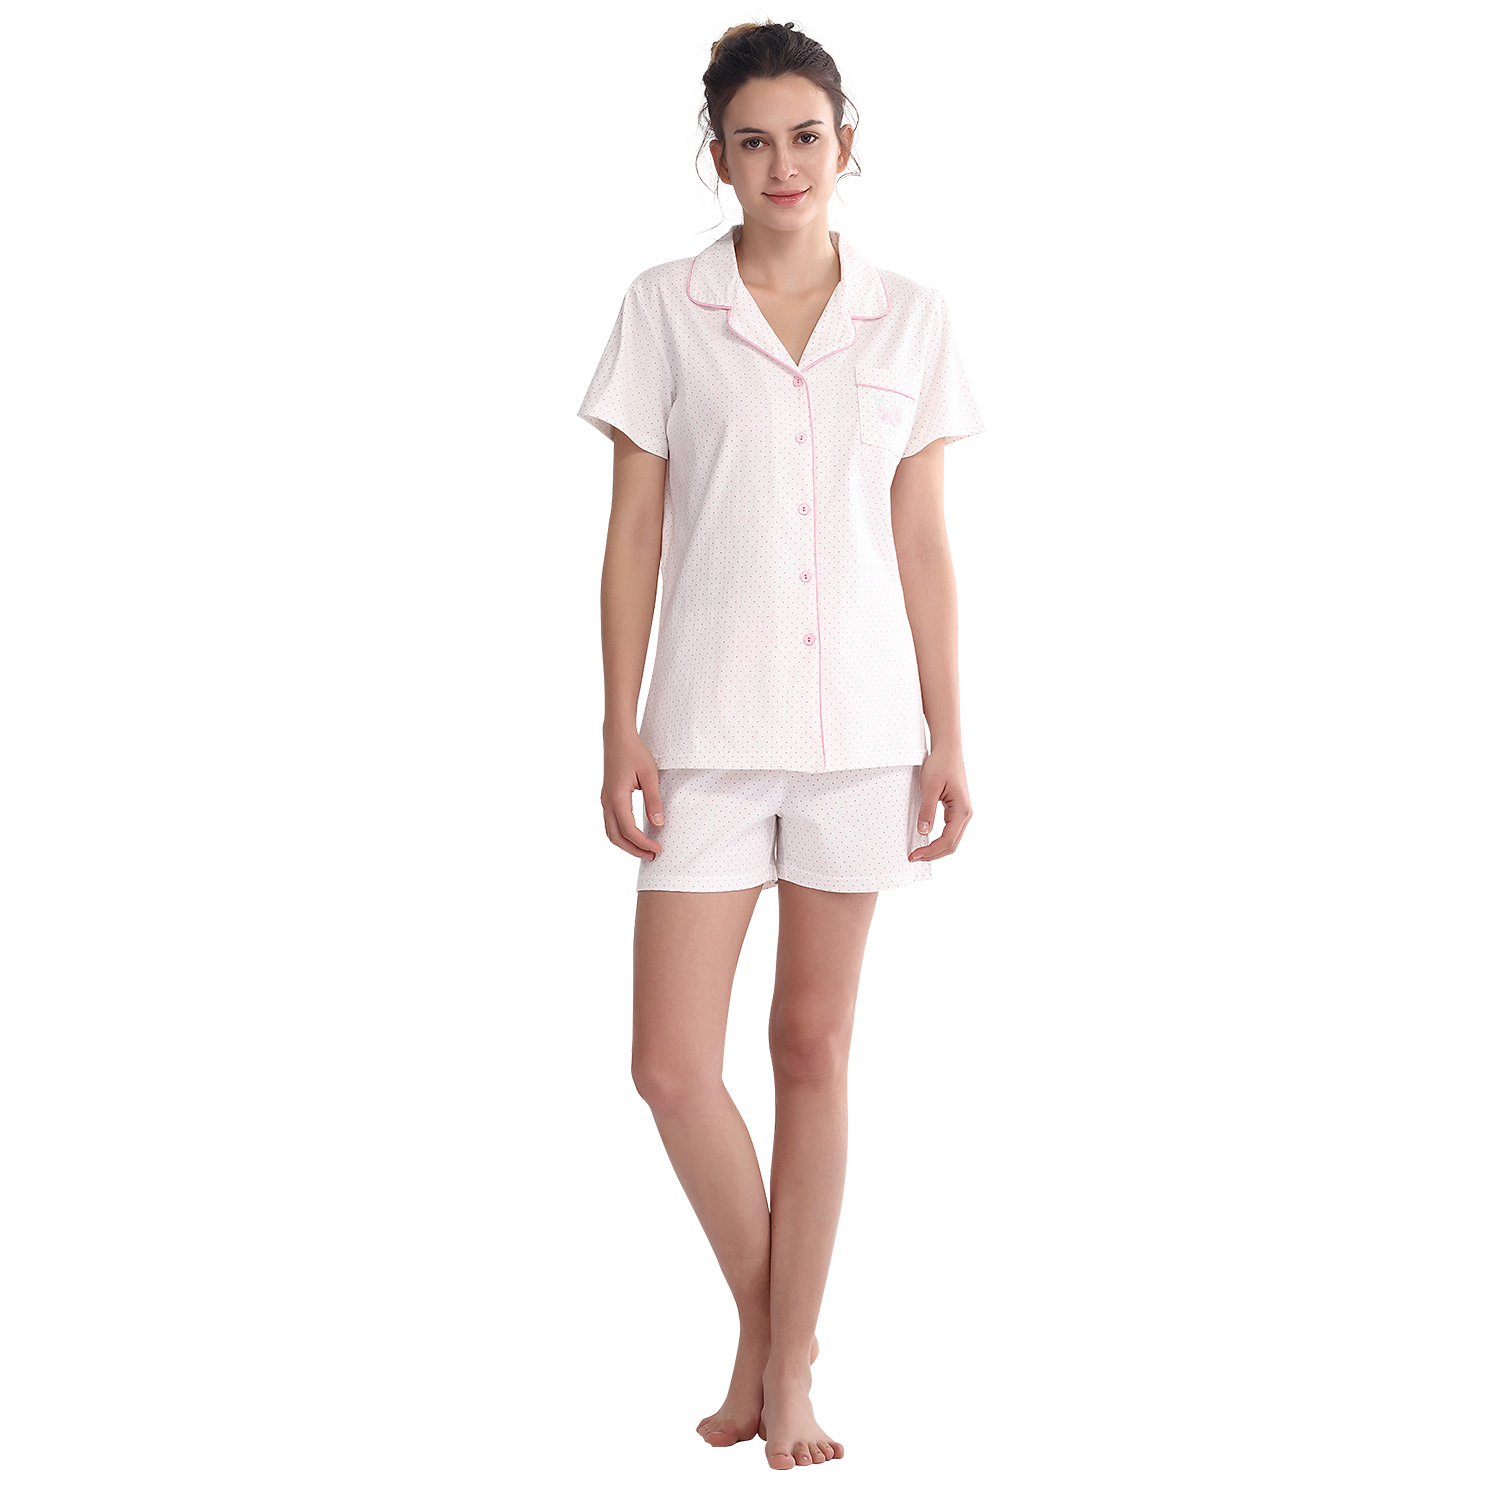 Keyocean Women PJ Set for Women or Ladies, 100% Cotton Women Pajamas Set -  Keyocean Cotton Nightgowns for Women